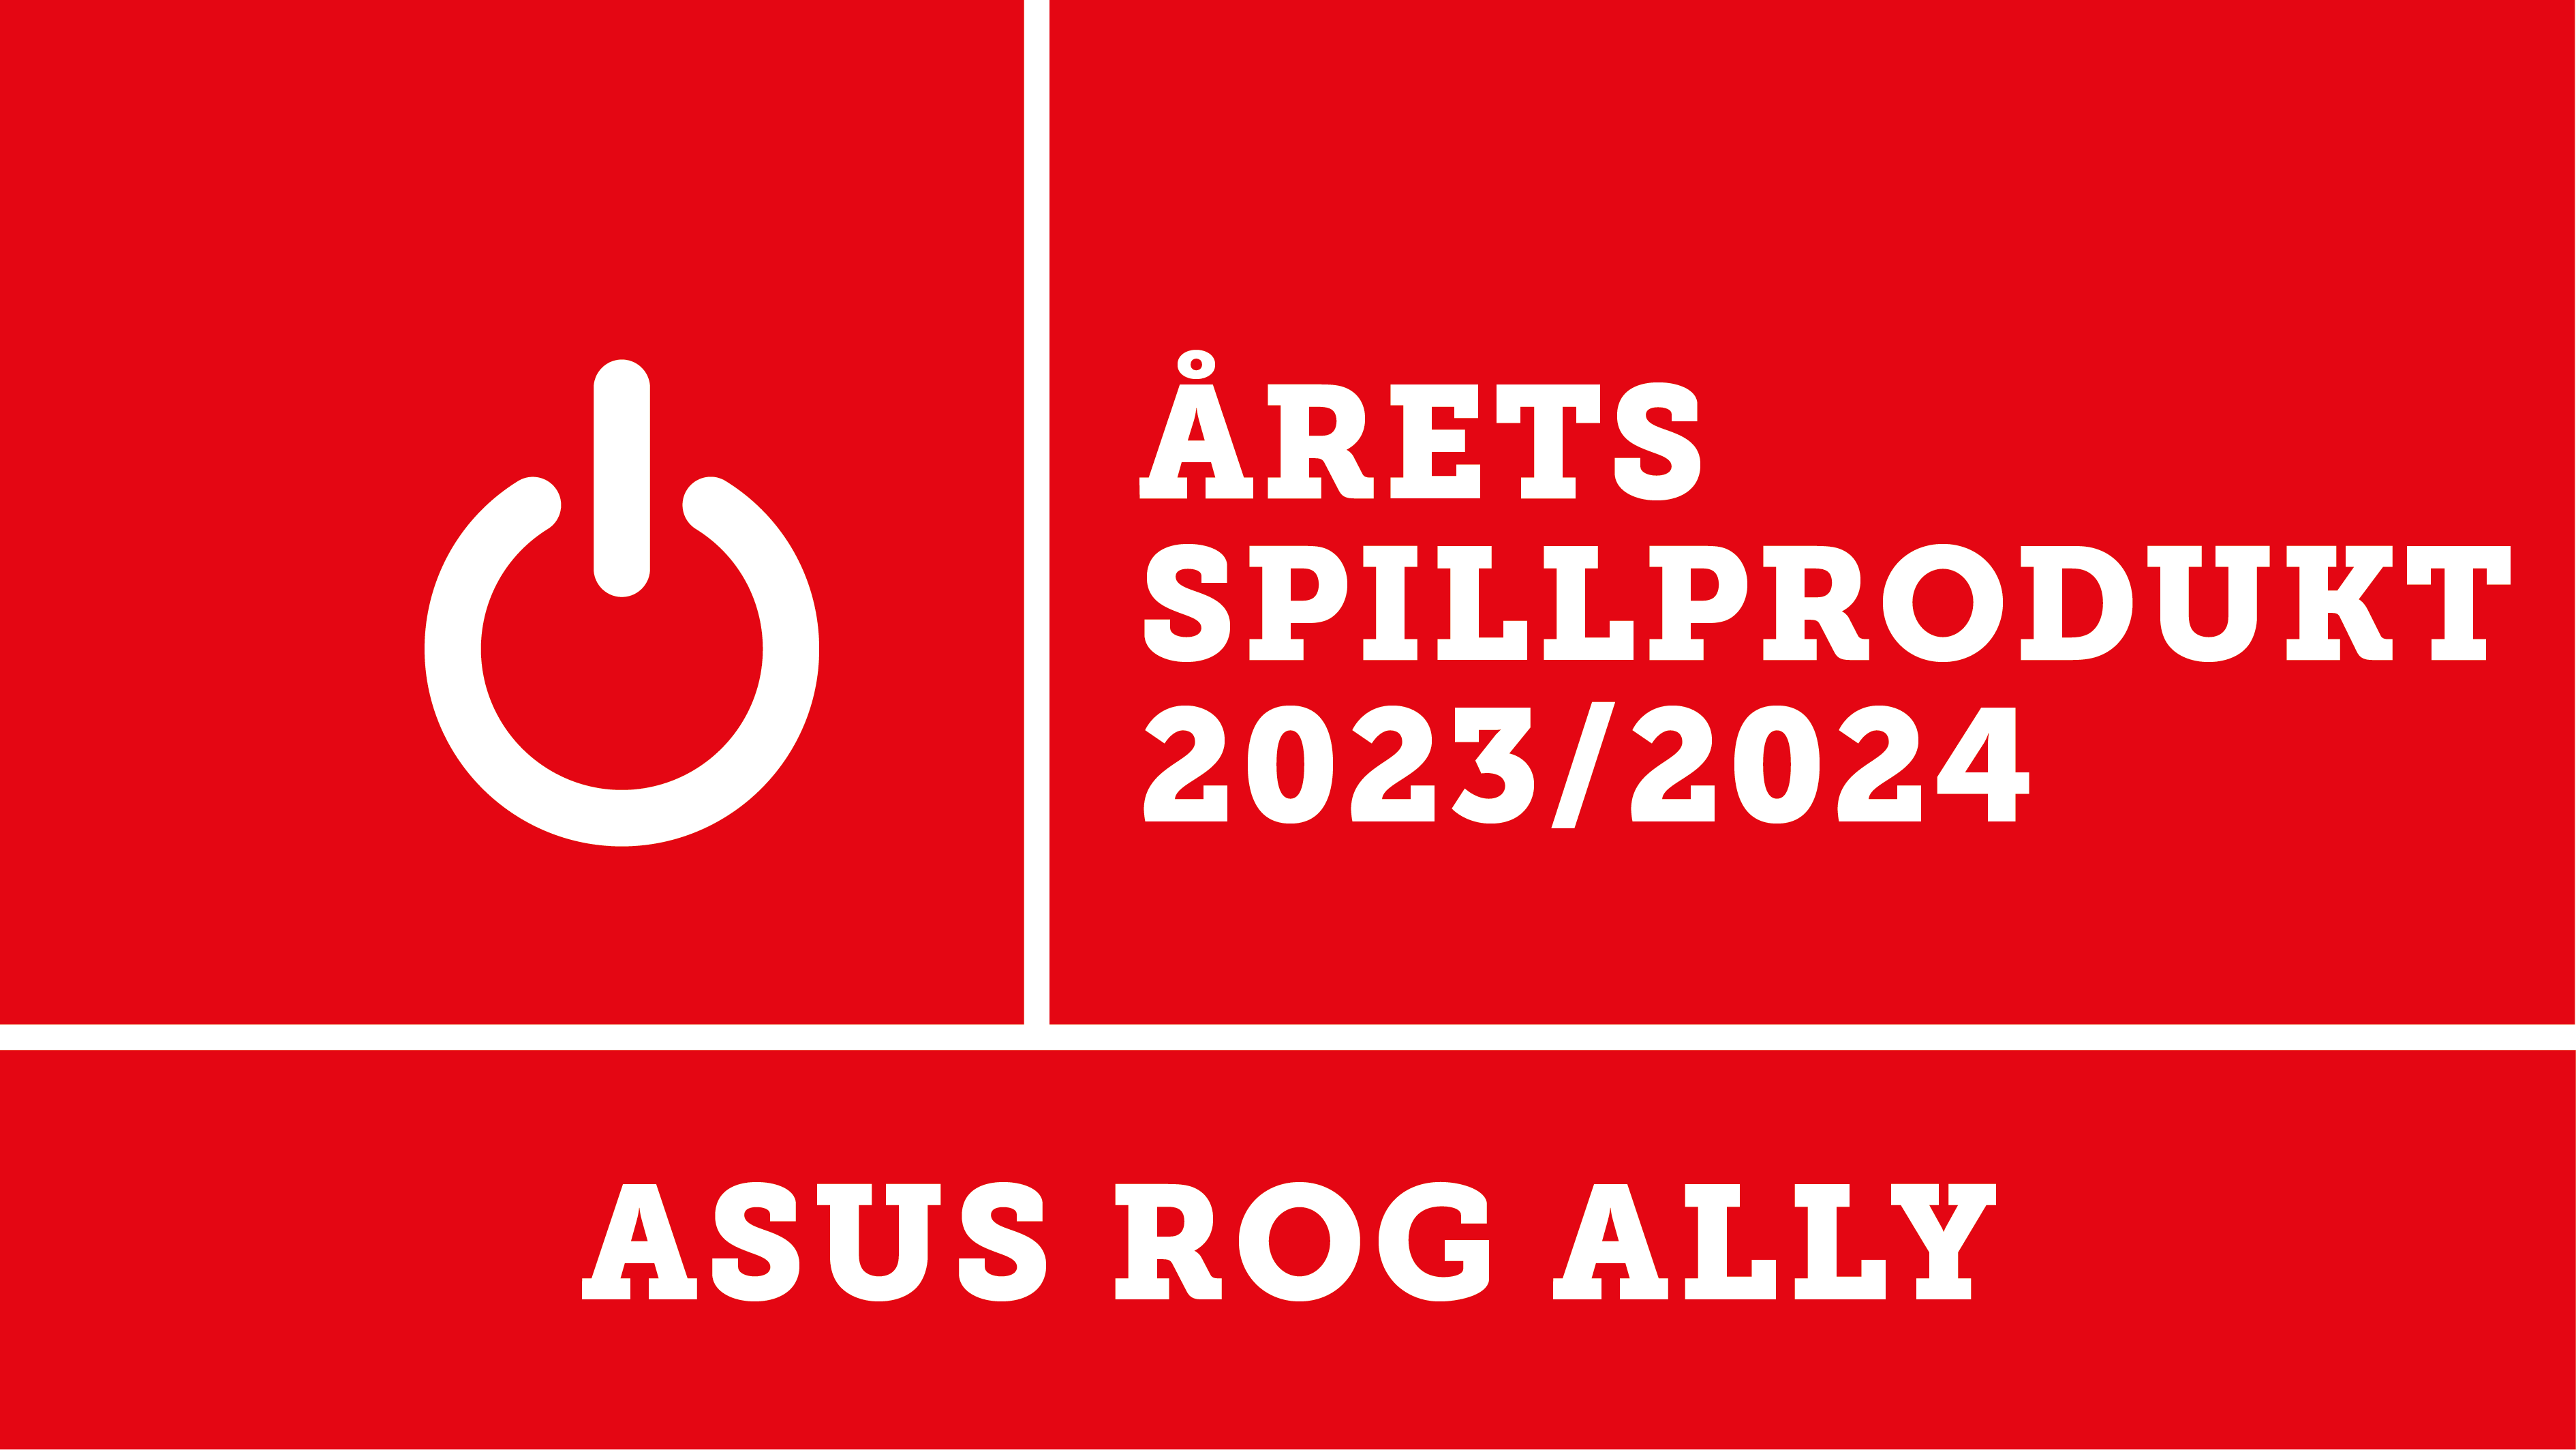 Asus ROG Ally er kåret til årets spillprodukt 2023 av Elektronikkbransjen. 